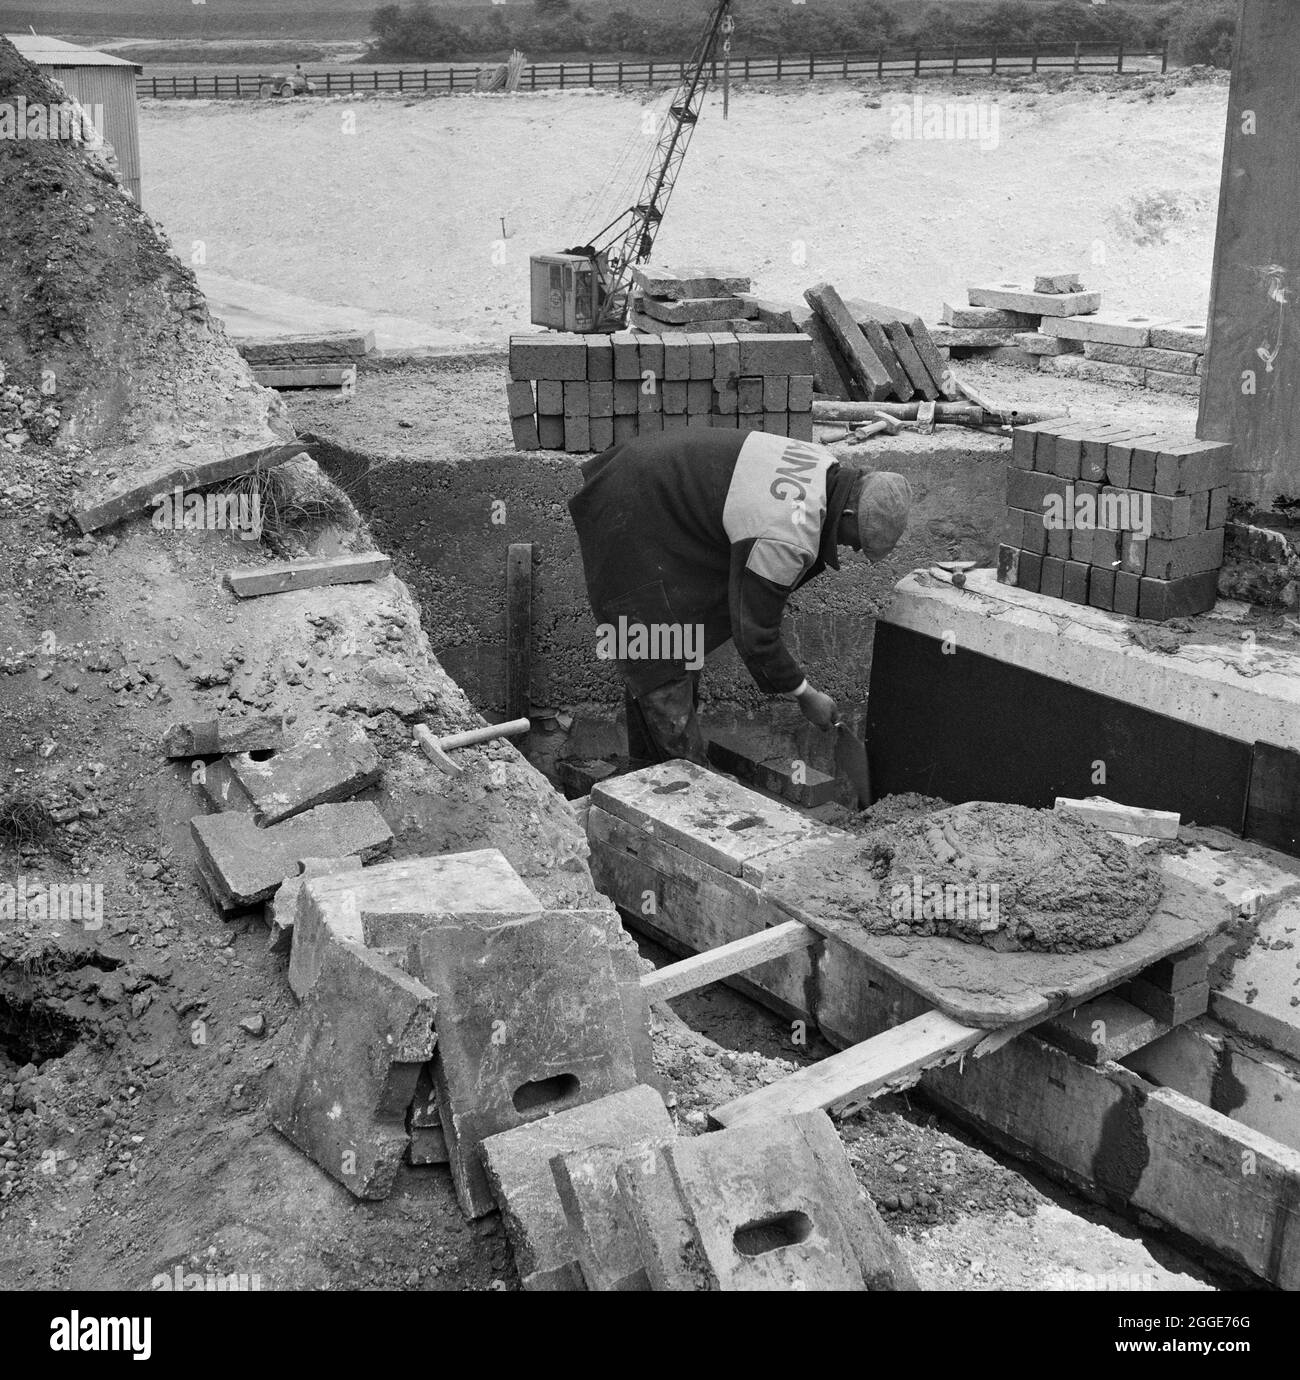 Un ouvrier de Laing posant des briques près d'un canal de drainage pendant la construction de la structure 9, un pont transportant la ligne de chemin de fer Luton-Dunstable au-dessus de l'autoroute de Londres à Yorkshire (M1). La légende sous l'impression de l'album correspondant indique qu'il s'agit de « brickwork bleu ». Banque D'Images